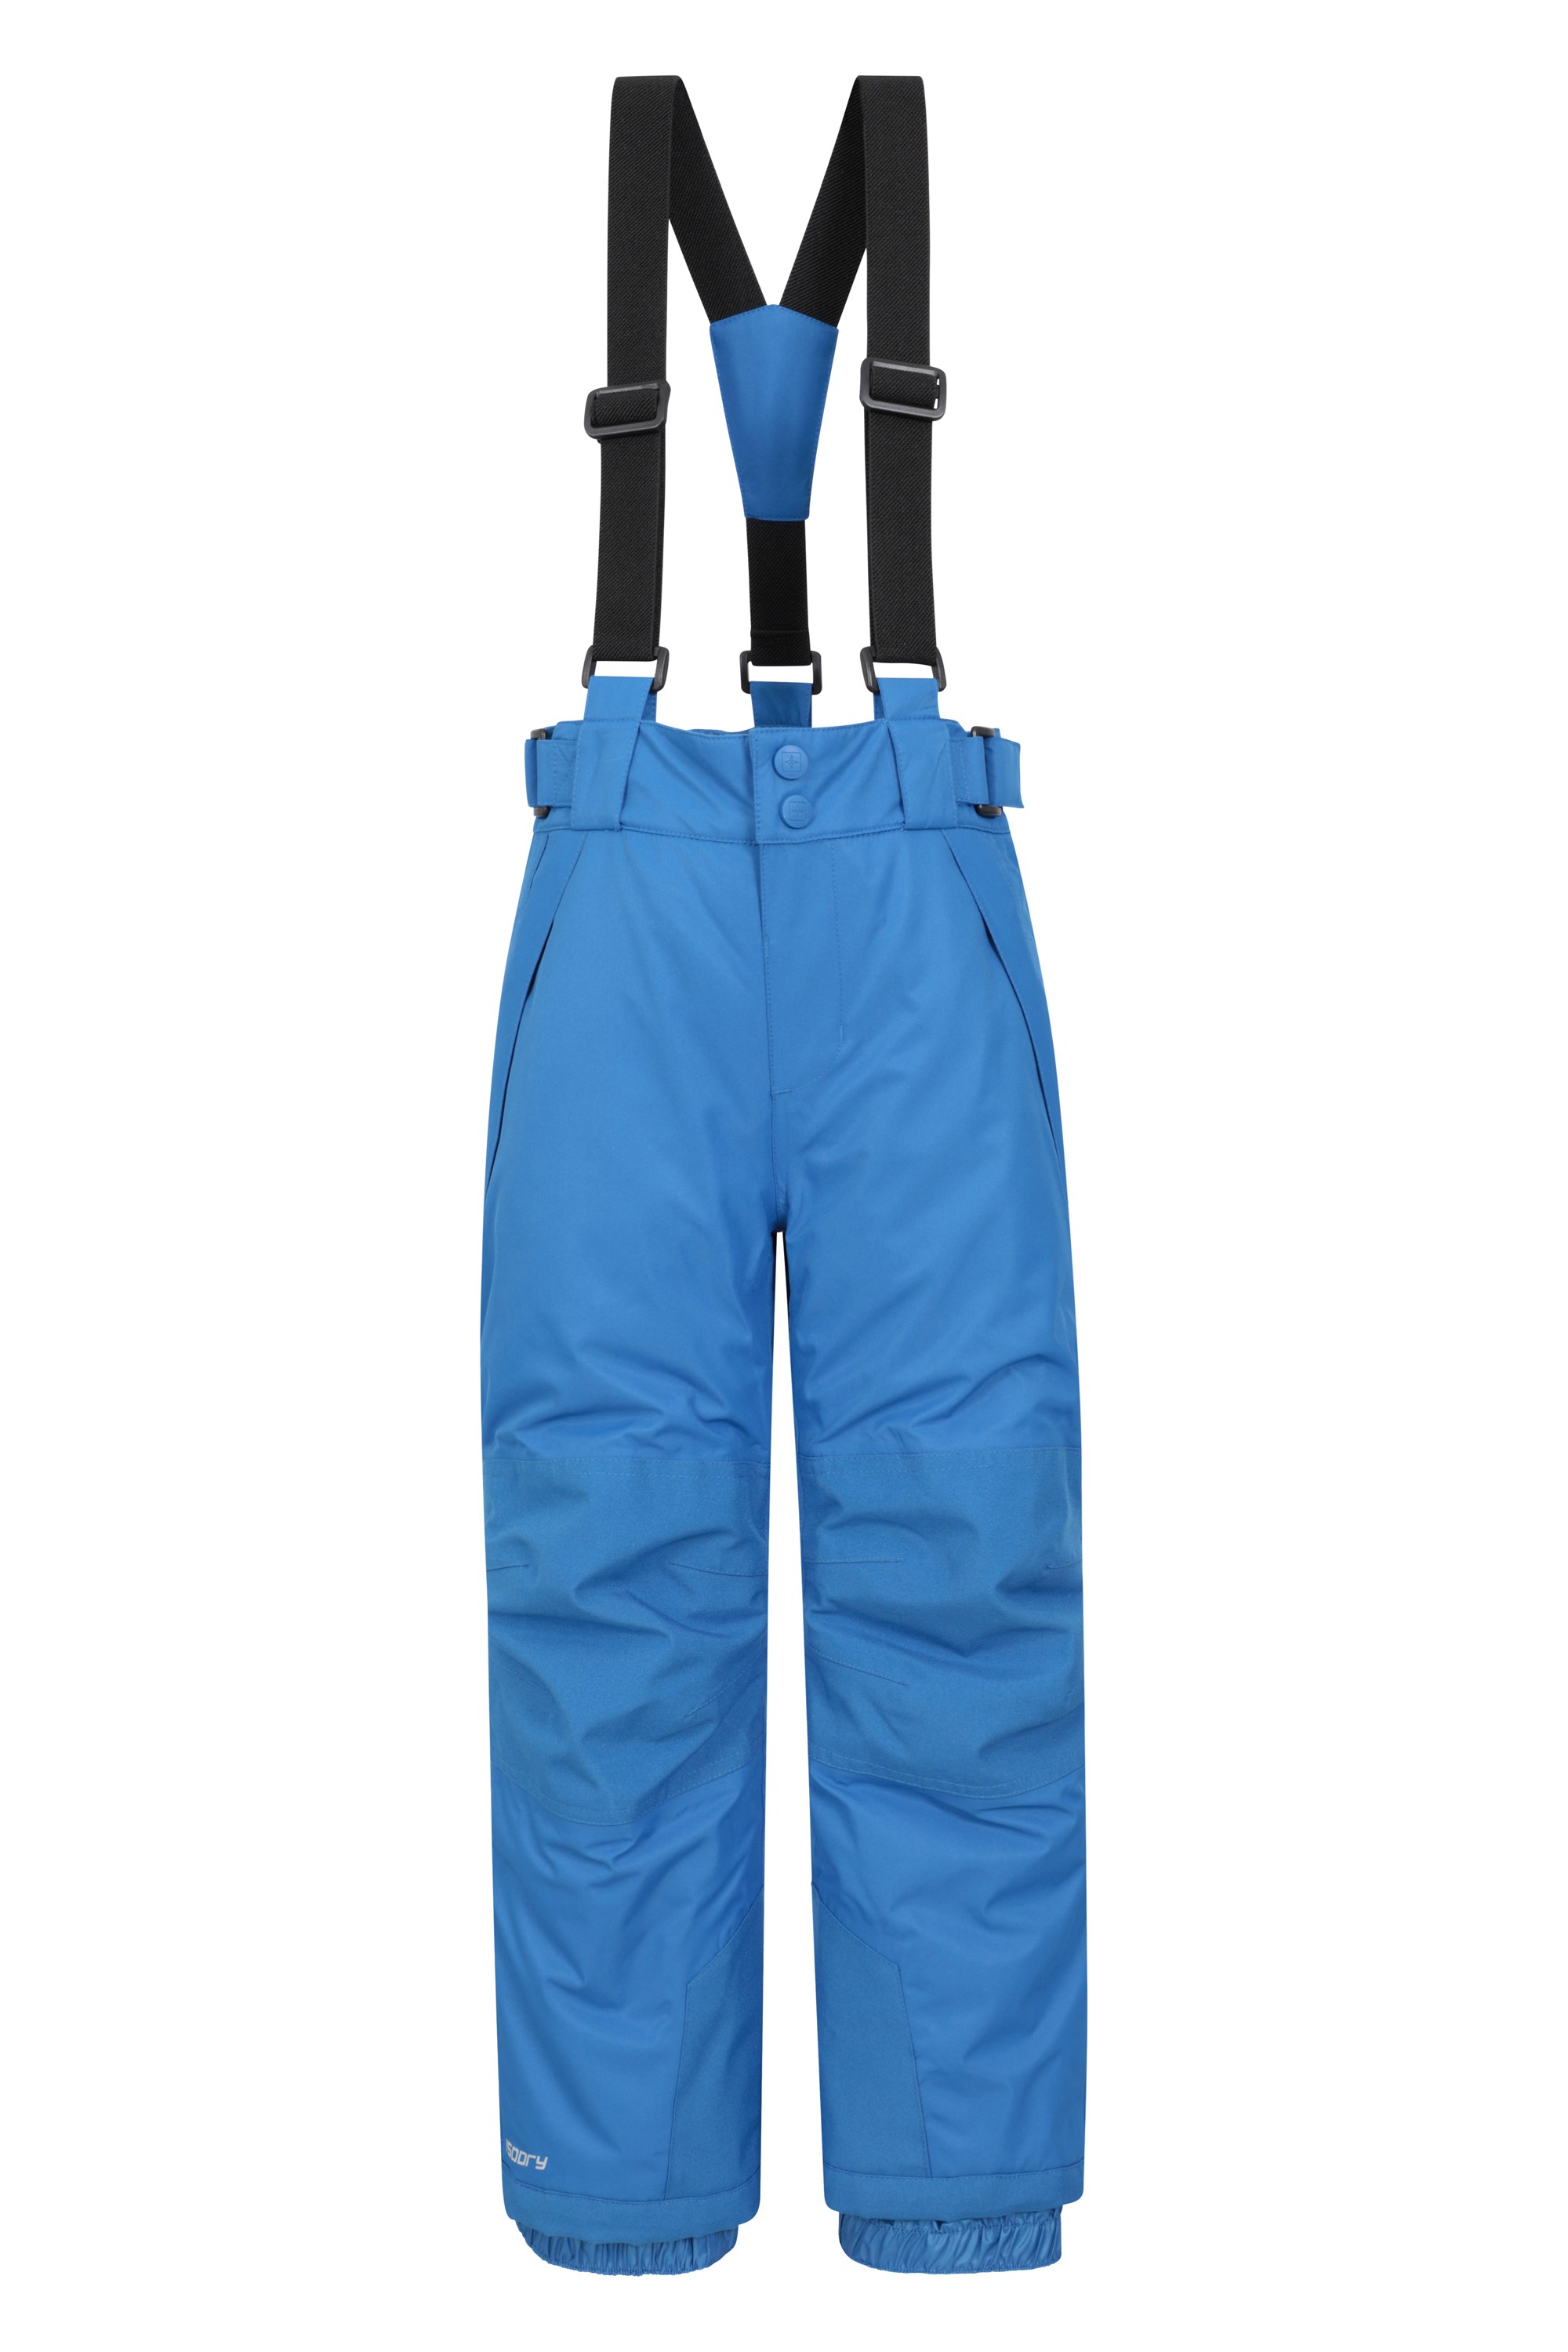 Falcon Extreme Kids Ski Pants - Blue